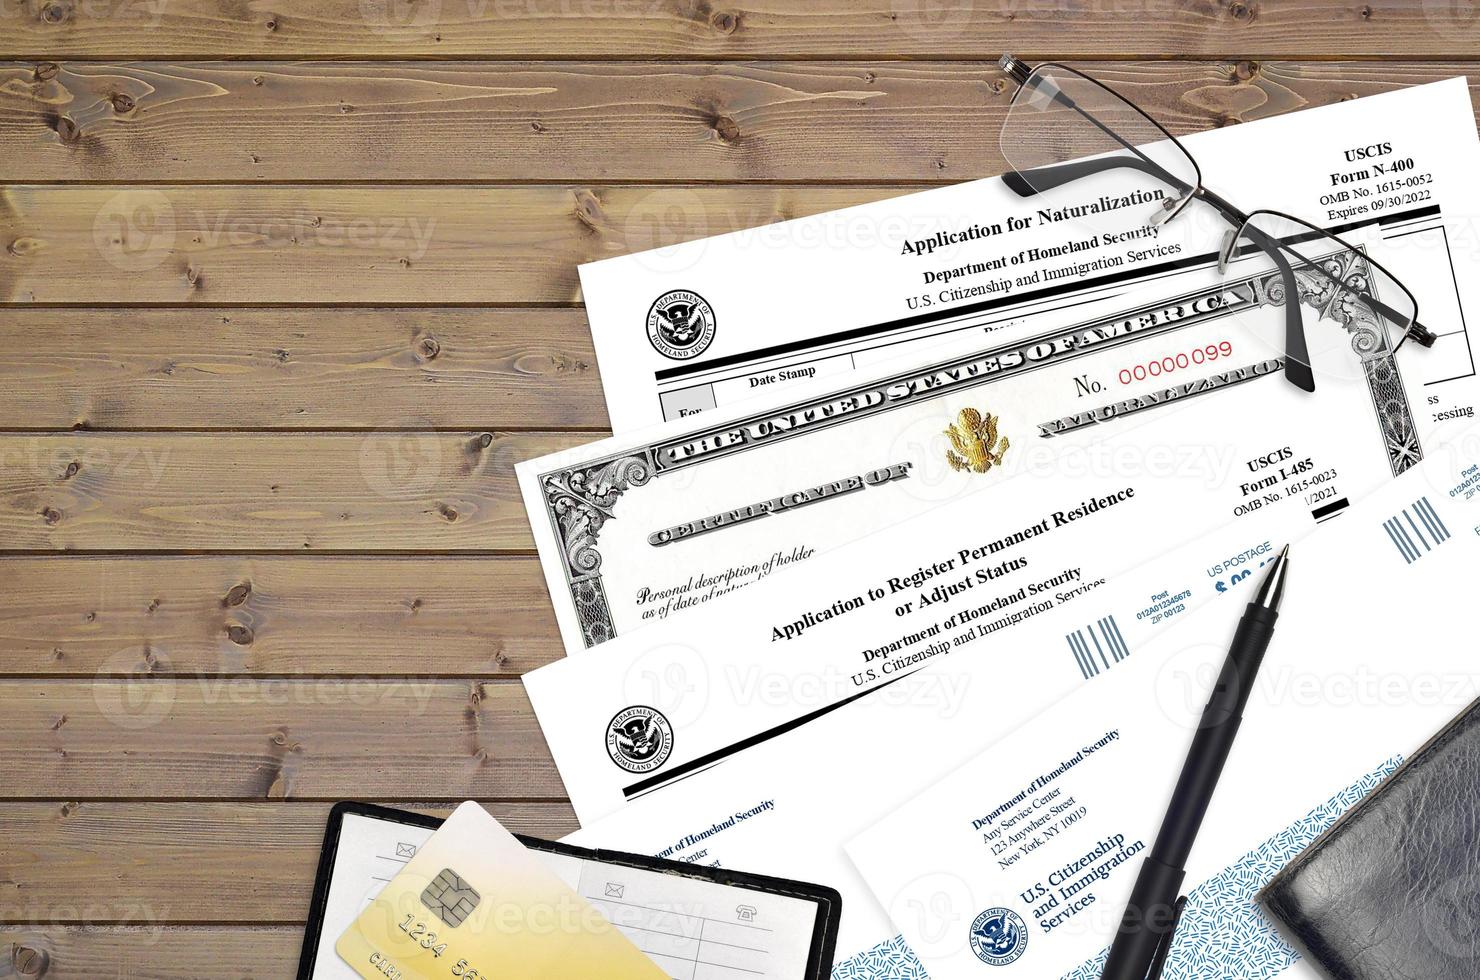 Uscis-Formular i-485 Antrag auf Registrierung des ständigen Wohnsitzes oder Anpassung des Status und n-400 Antrag auf Einbürgerung mit Einbürgerungsurkunde liegt auf dem Bürotisch foto